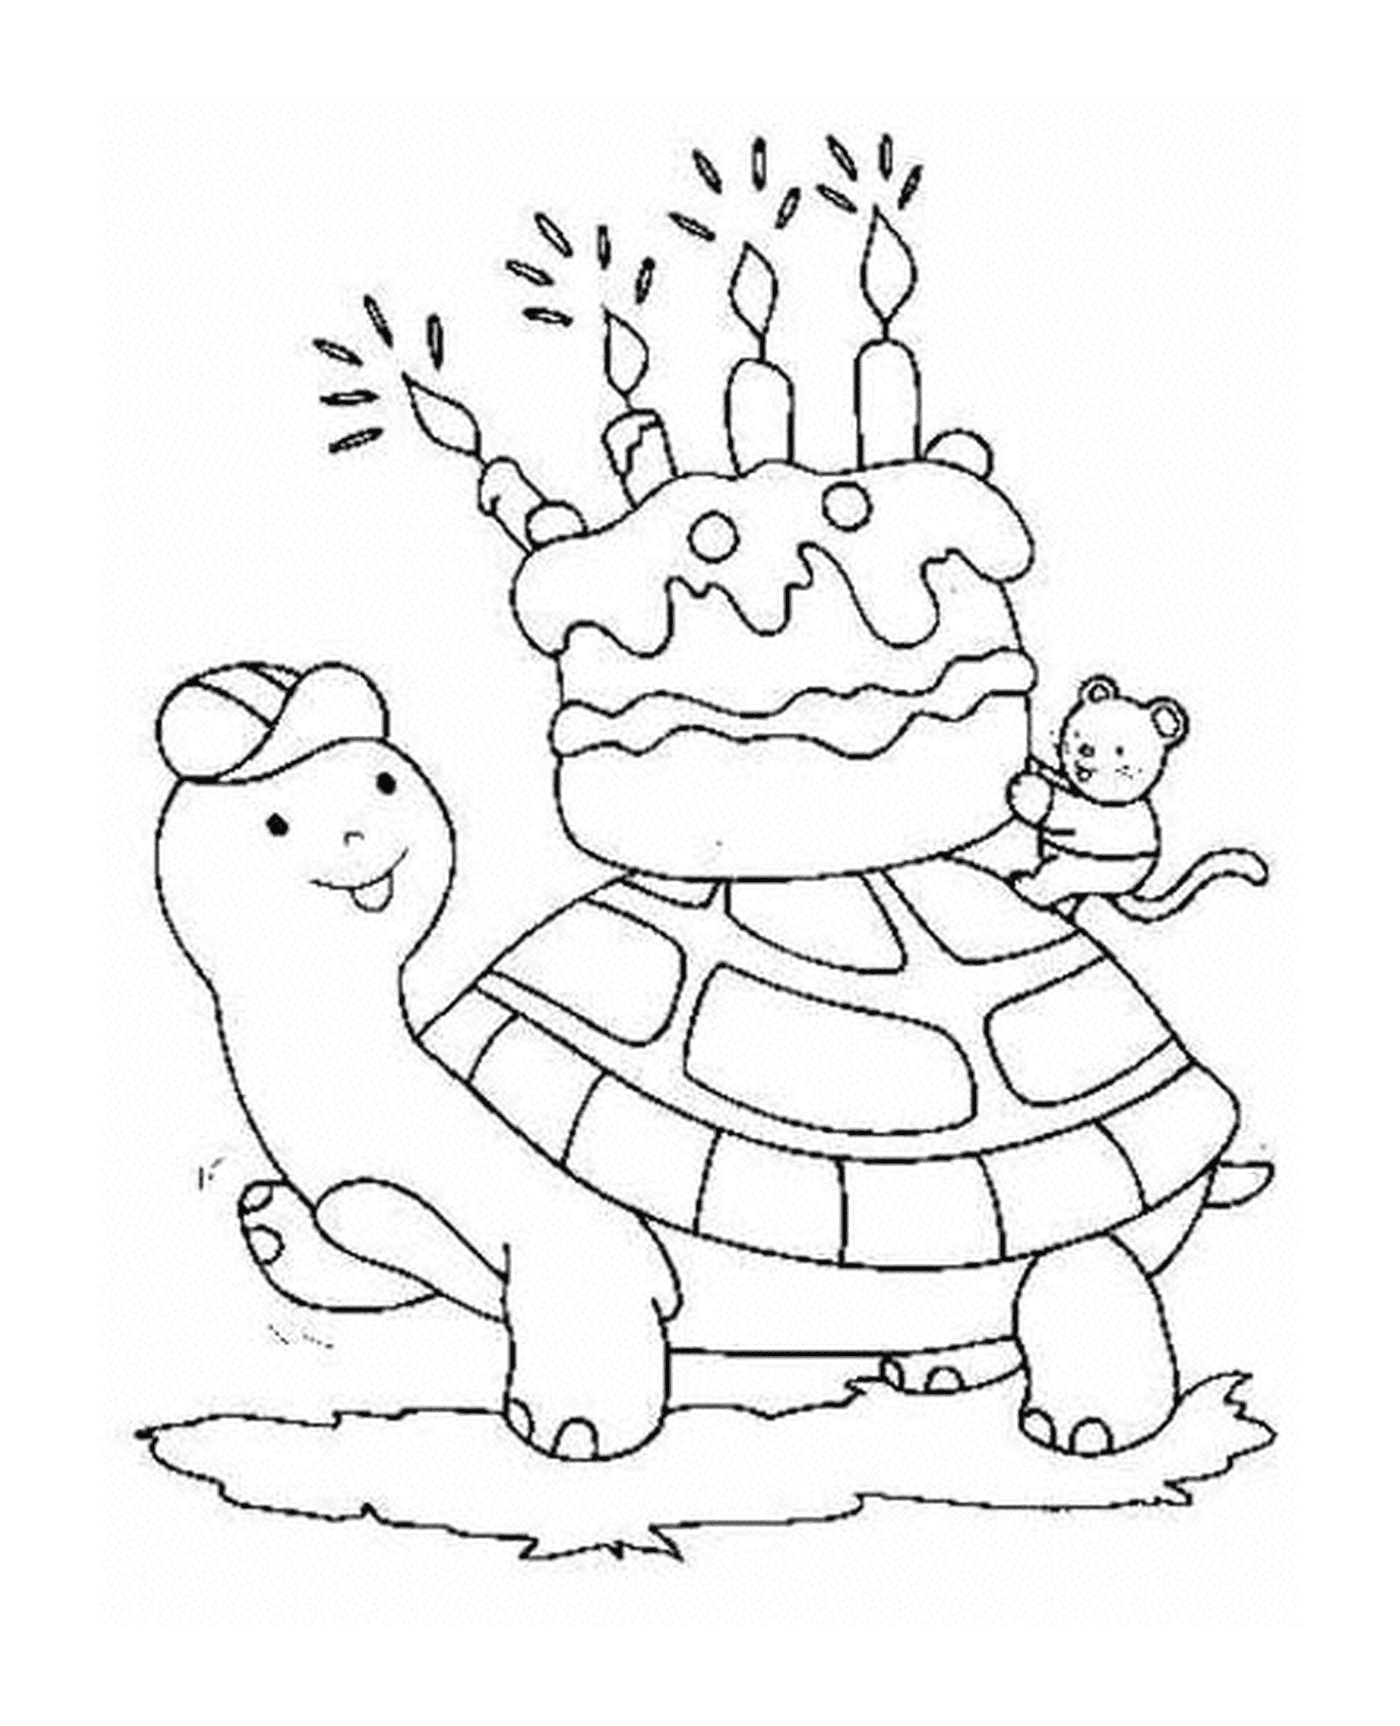  Turtle indossa una torta di compleanno 